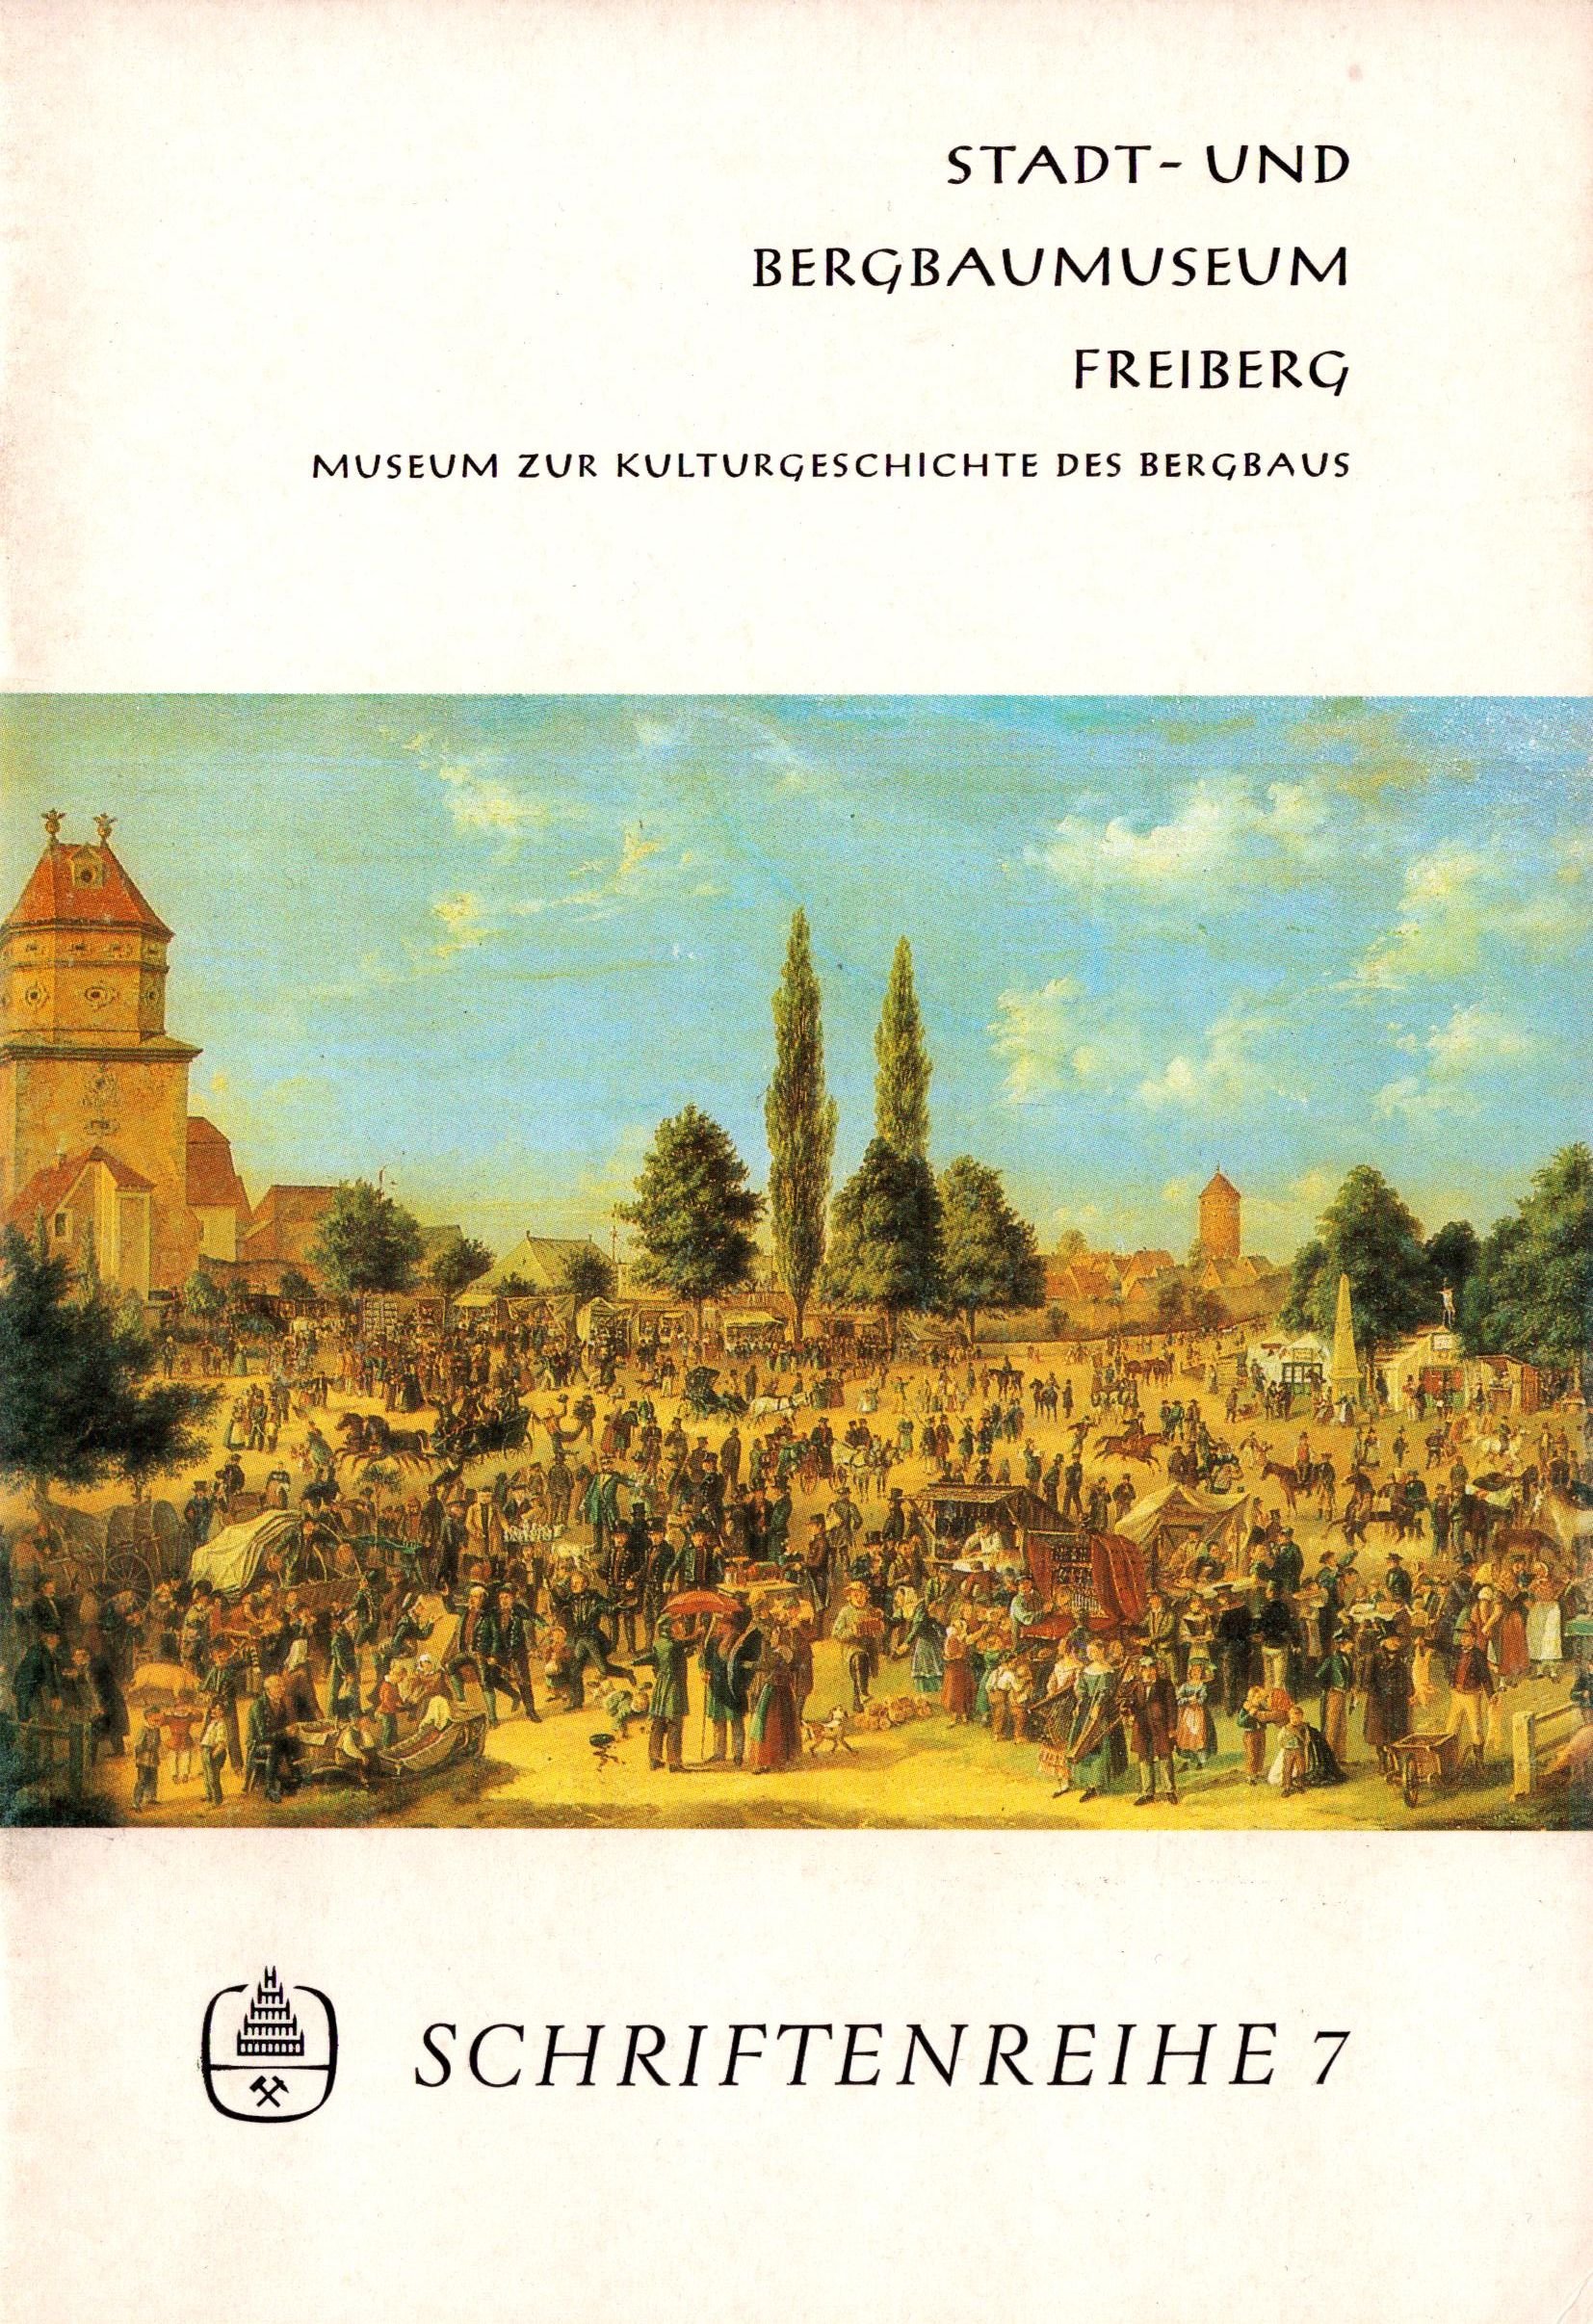 Stadt- und Bergbaumuseum Freiberg - Schriftenreihe 7 (Archiv SAXONIA-FREIBERG-STIFTUNG CC BY-NC-SA)